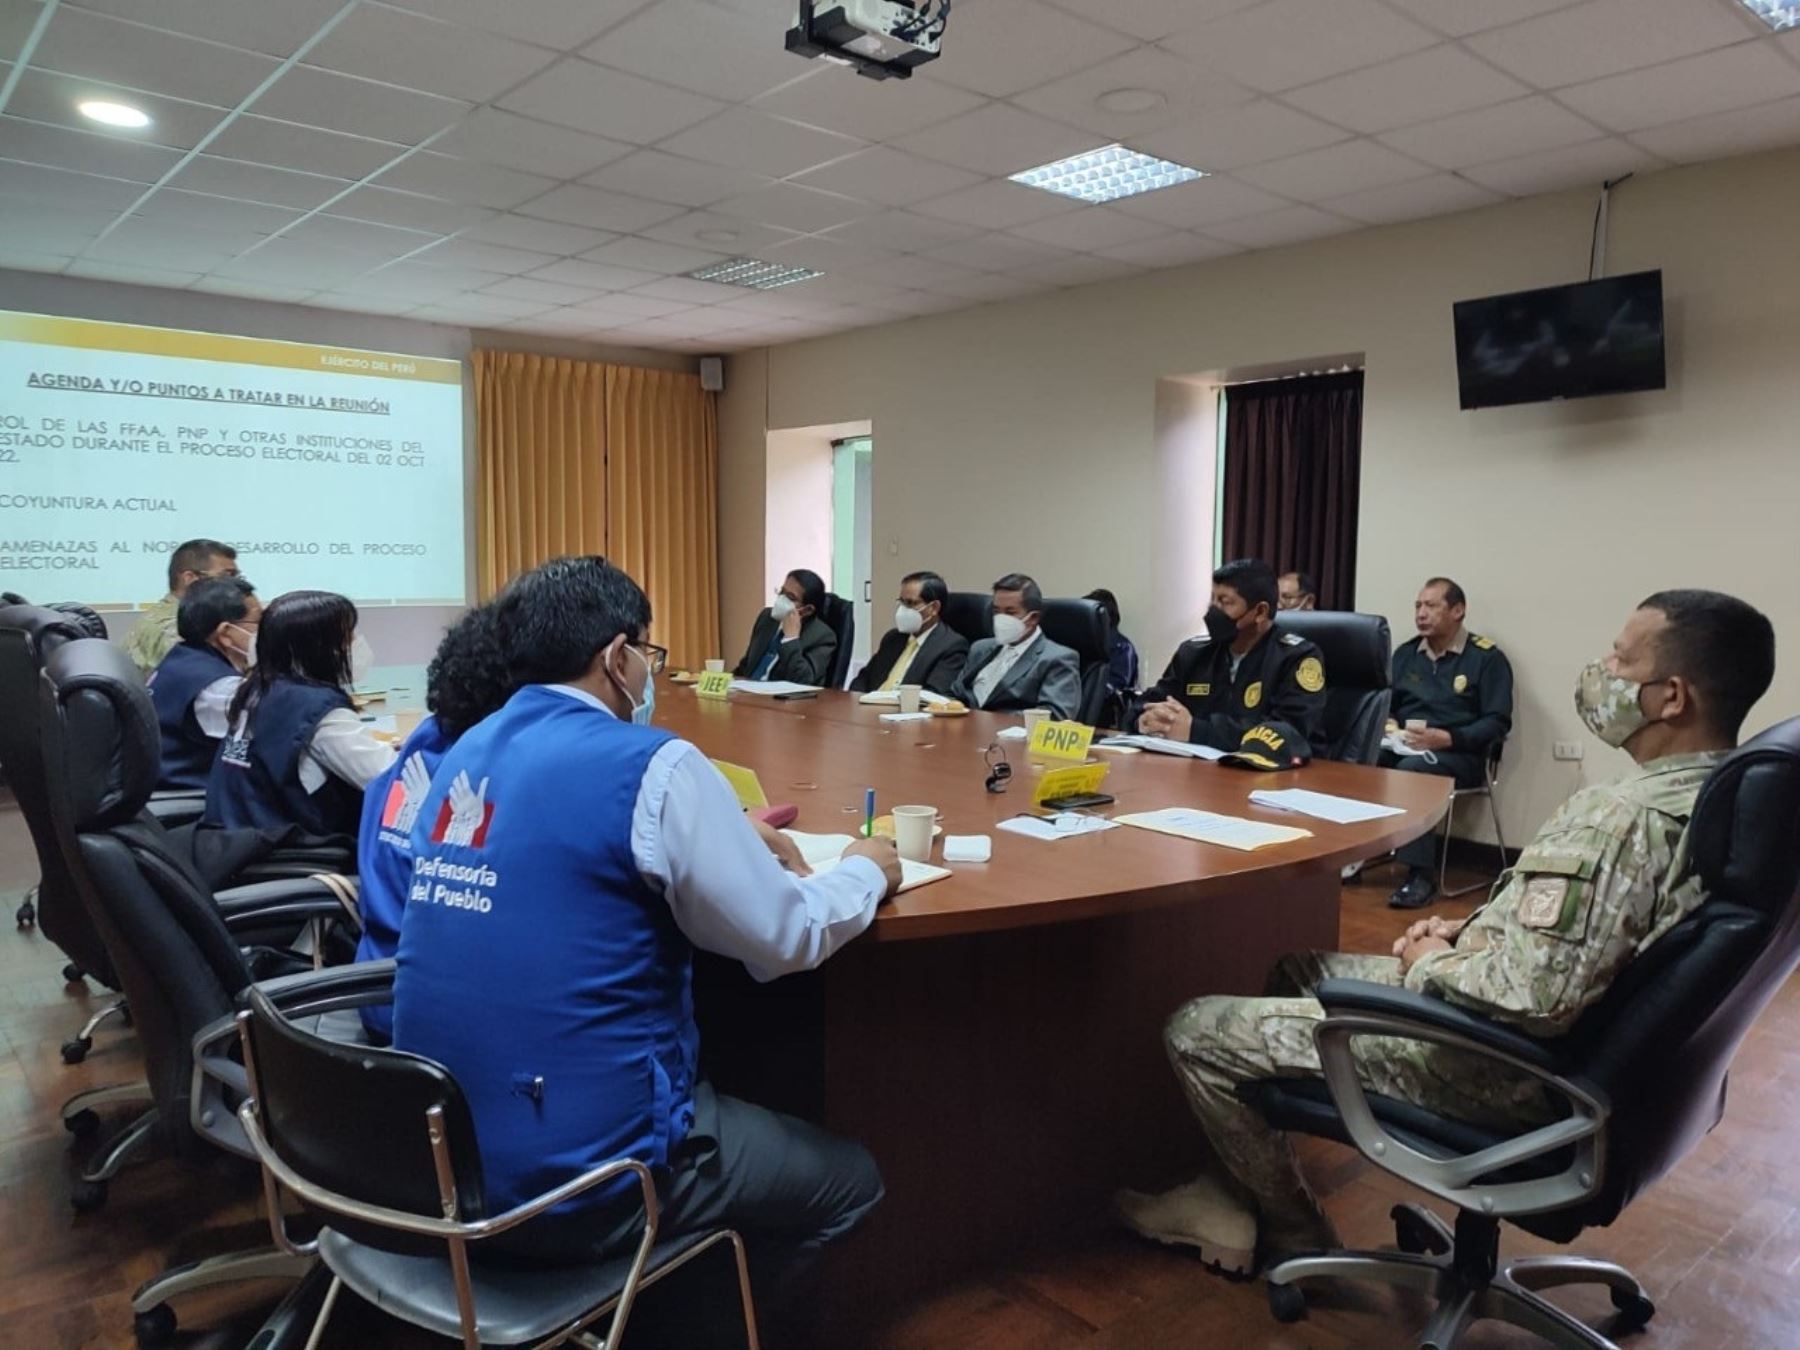 Fuerzas Armadas y las autoridades electorales de Cusco coordinaron la custodia y seguridad del material electoral que se utilizará en las elecciones regionales y municipales del domingo 2 de octubre. ANDINA/Difusión